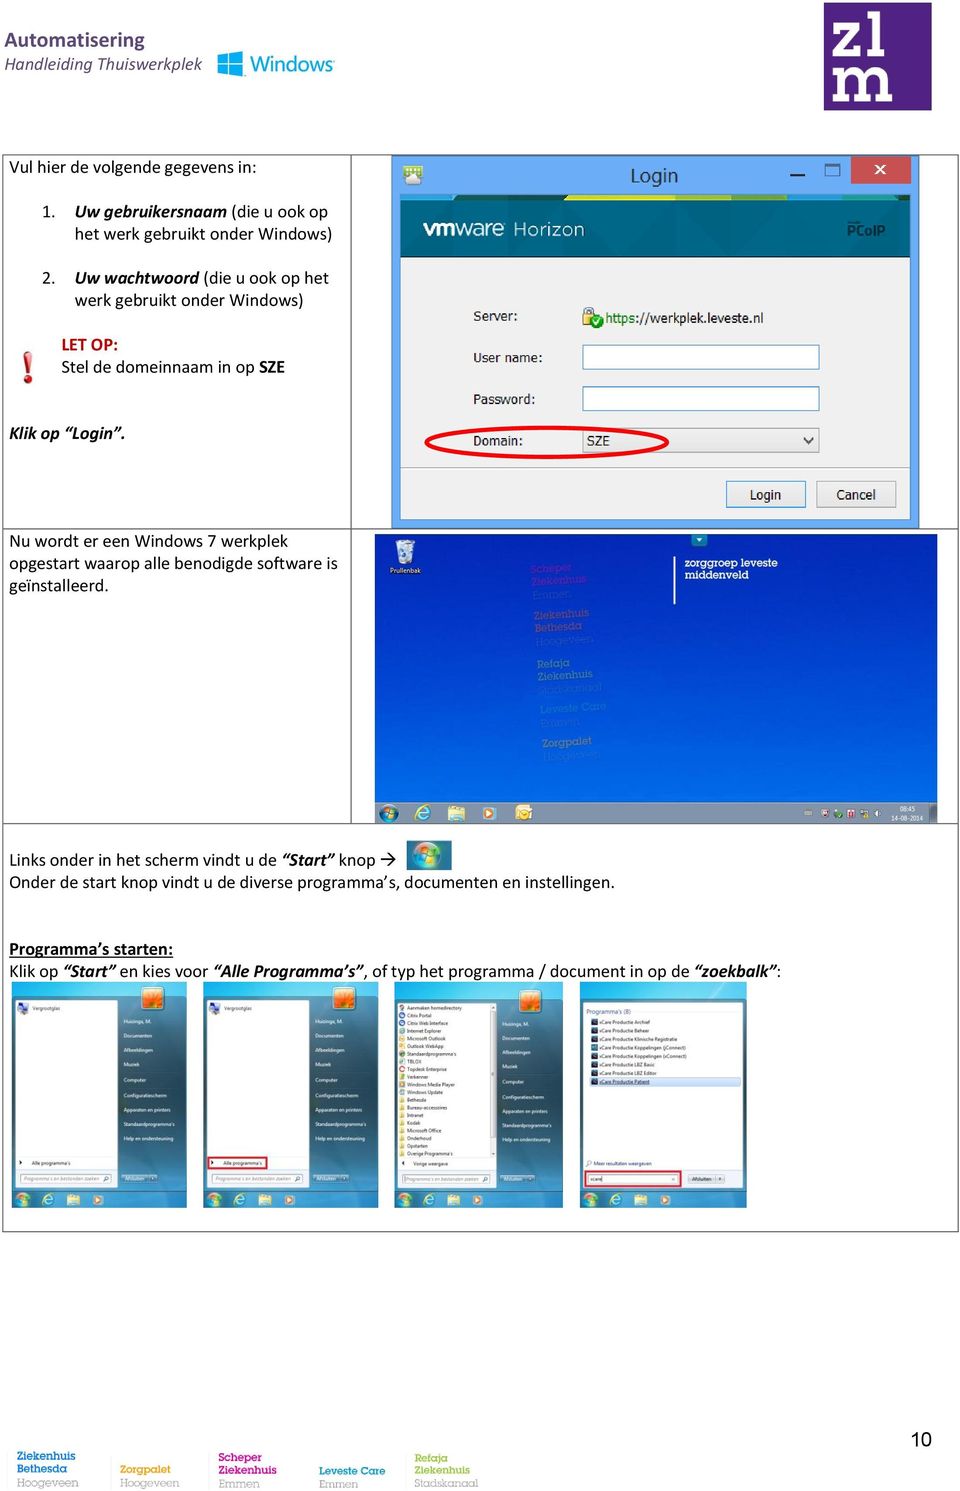 Nu wordt er een Windows 7 werkplek opgestart waarop alle benodigde software is geïnstalleerd.